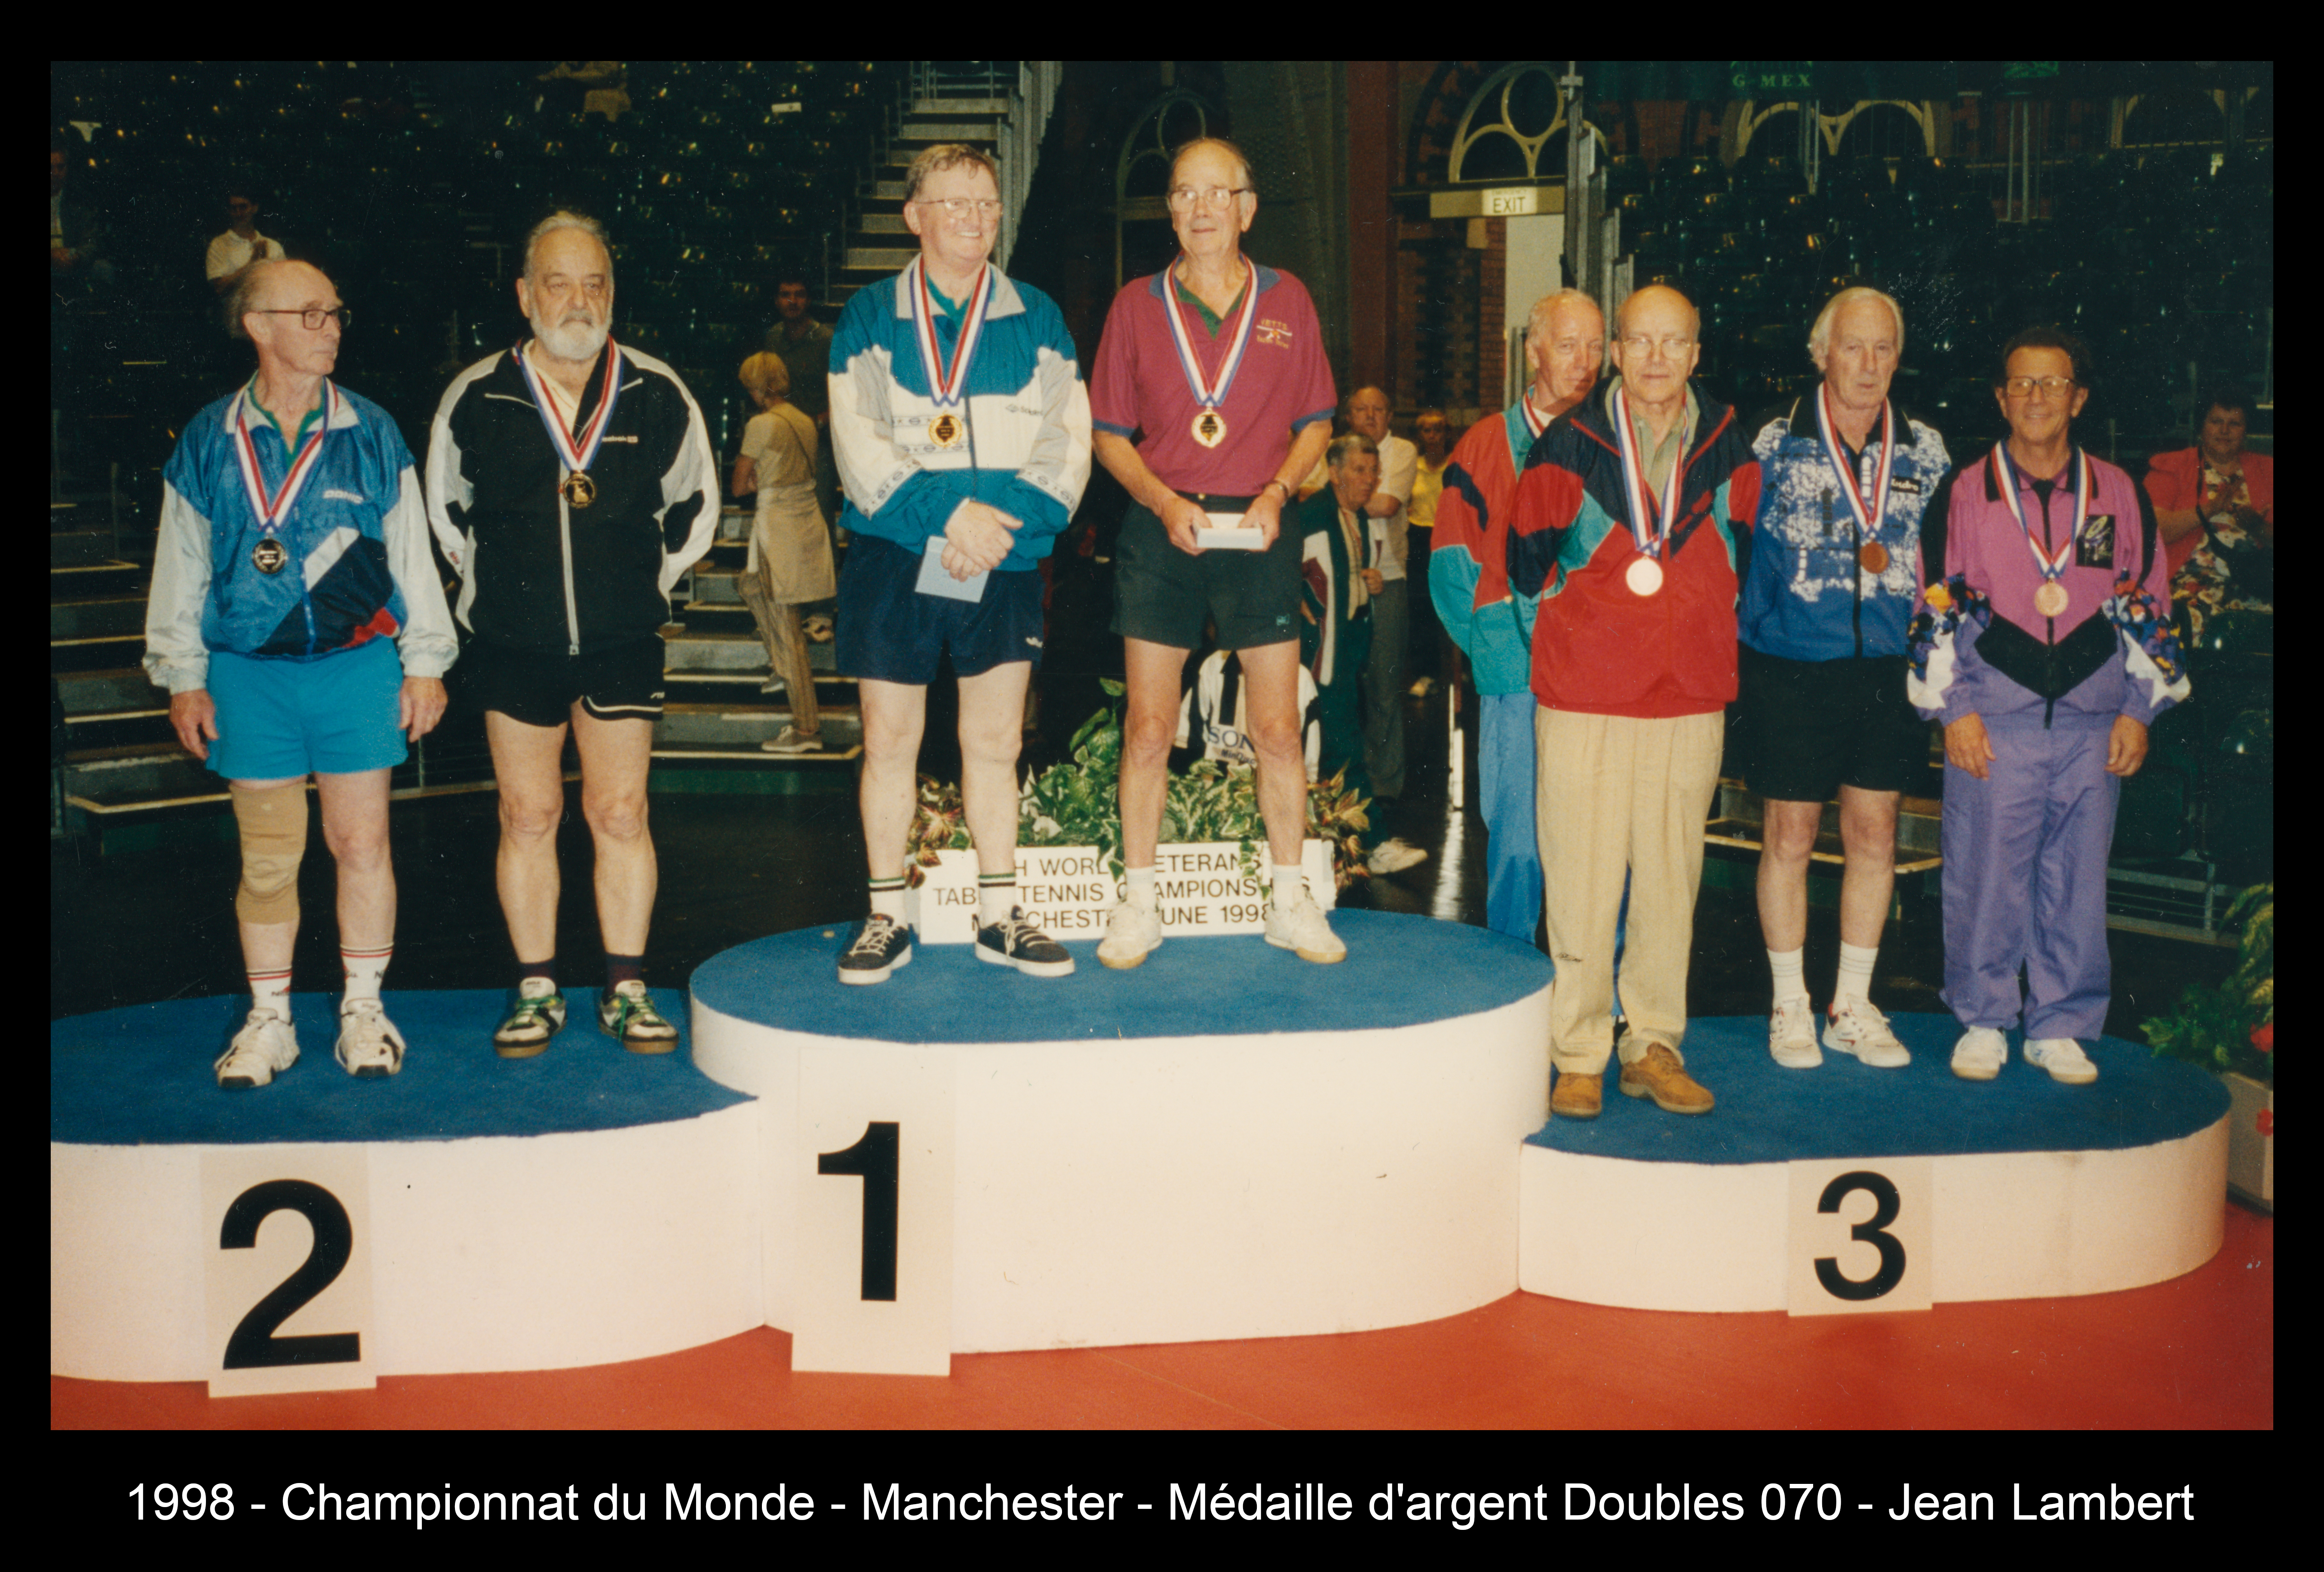 1998 - Championnat du Monde - Manchester - Médaille d'argent Doubles 070 - Jean Lambert